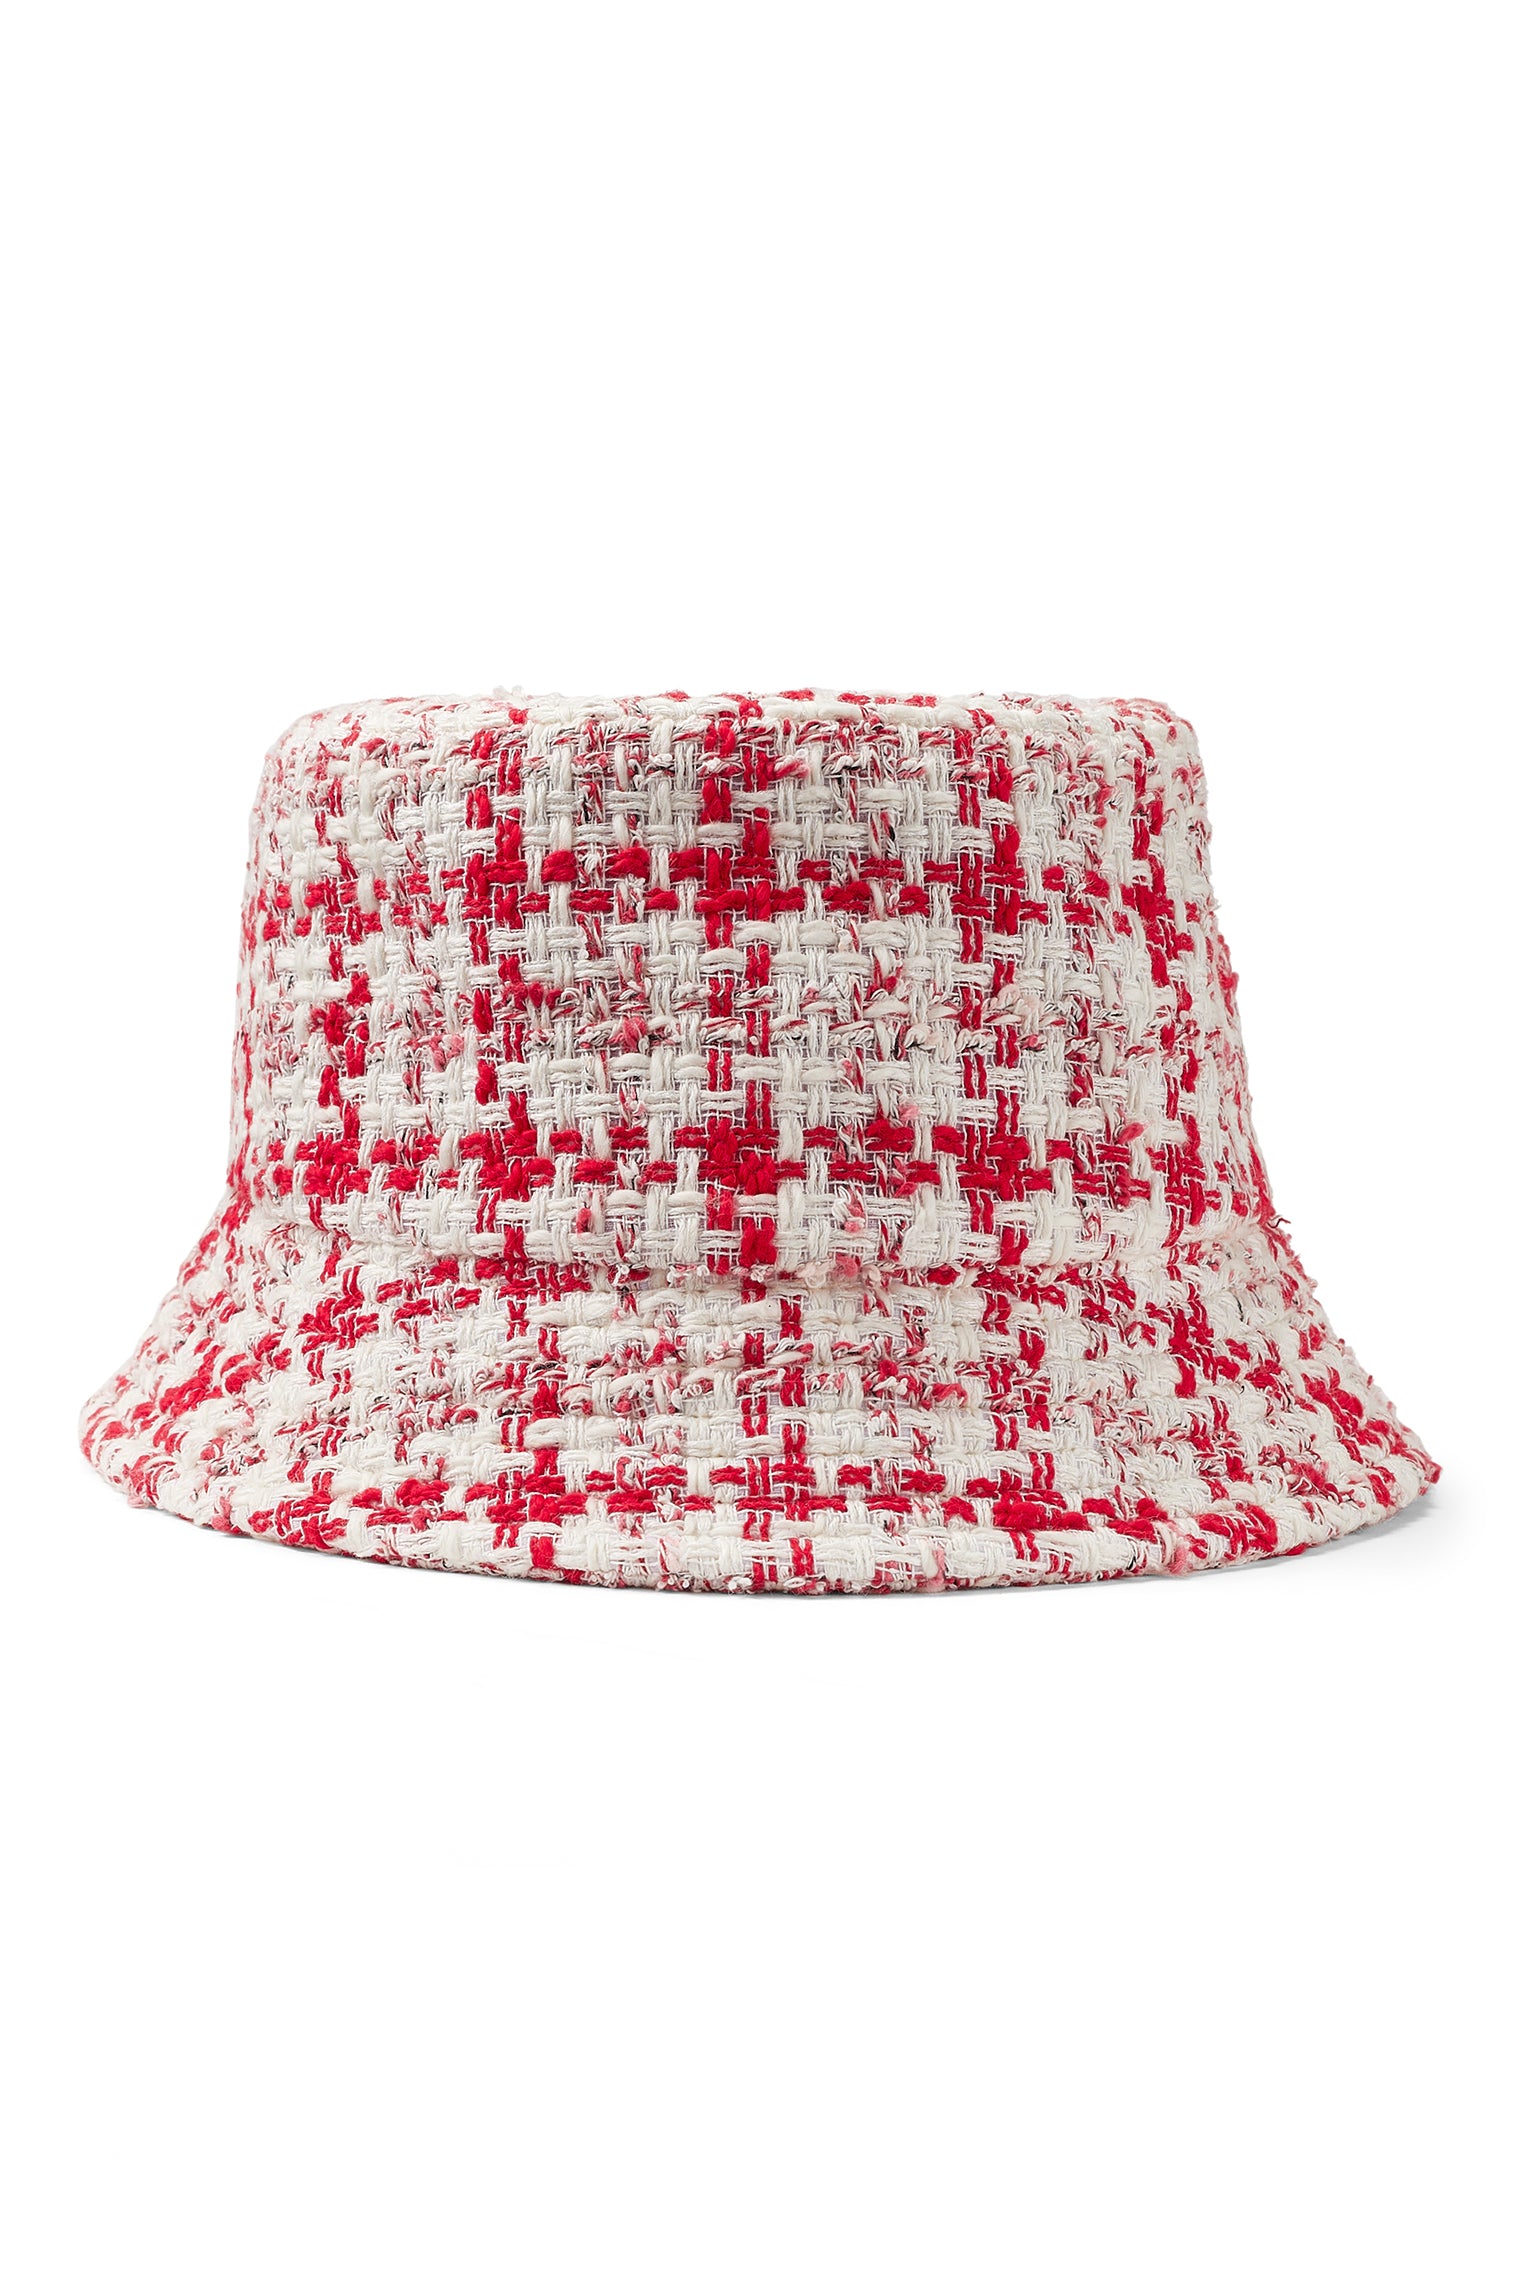 Rye Puppytooth Bucket Hat - Women's Bucket Hats - Lock & Co. Hatters London UK